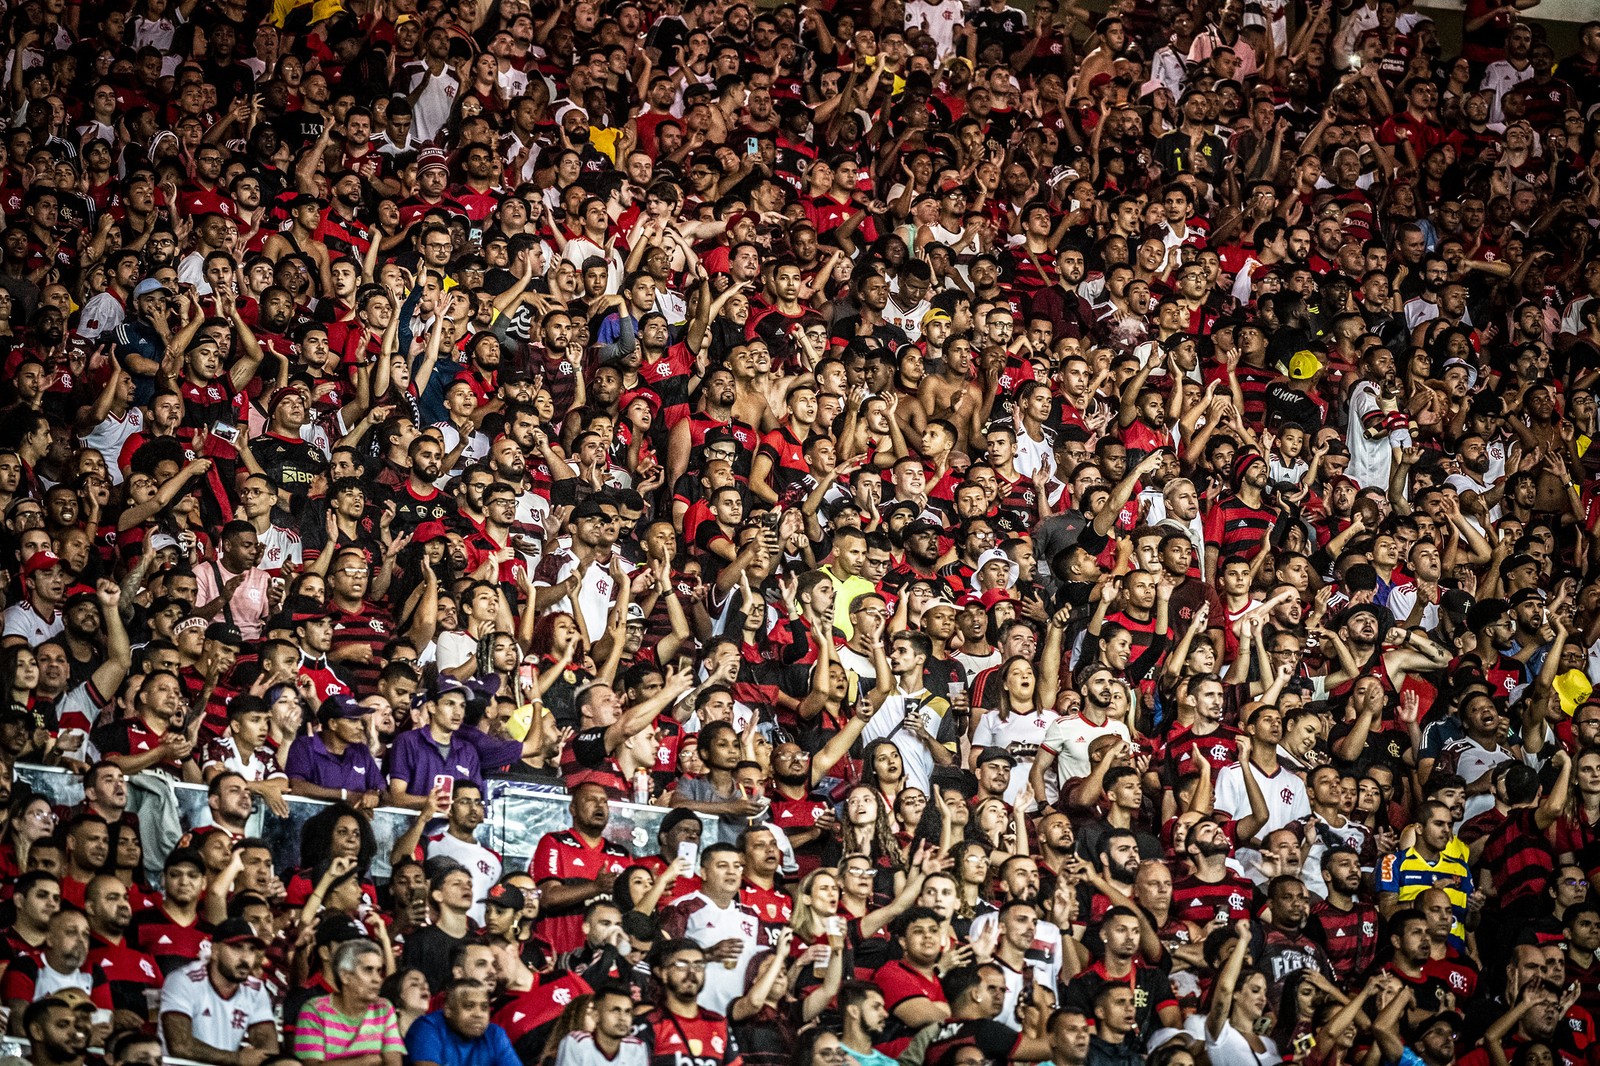 1º — Flamengo: 21,8 (de 20% a 23,6% pela margem de erro) — Foto: Alexandre Vidal / Flamengo